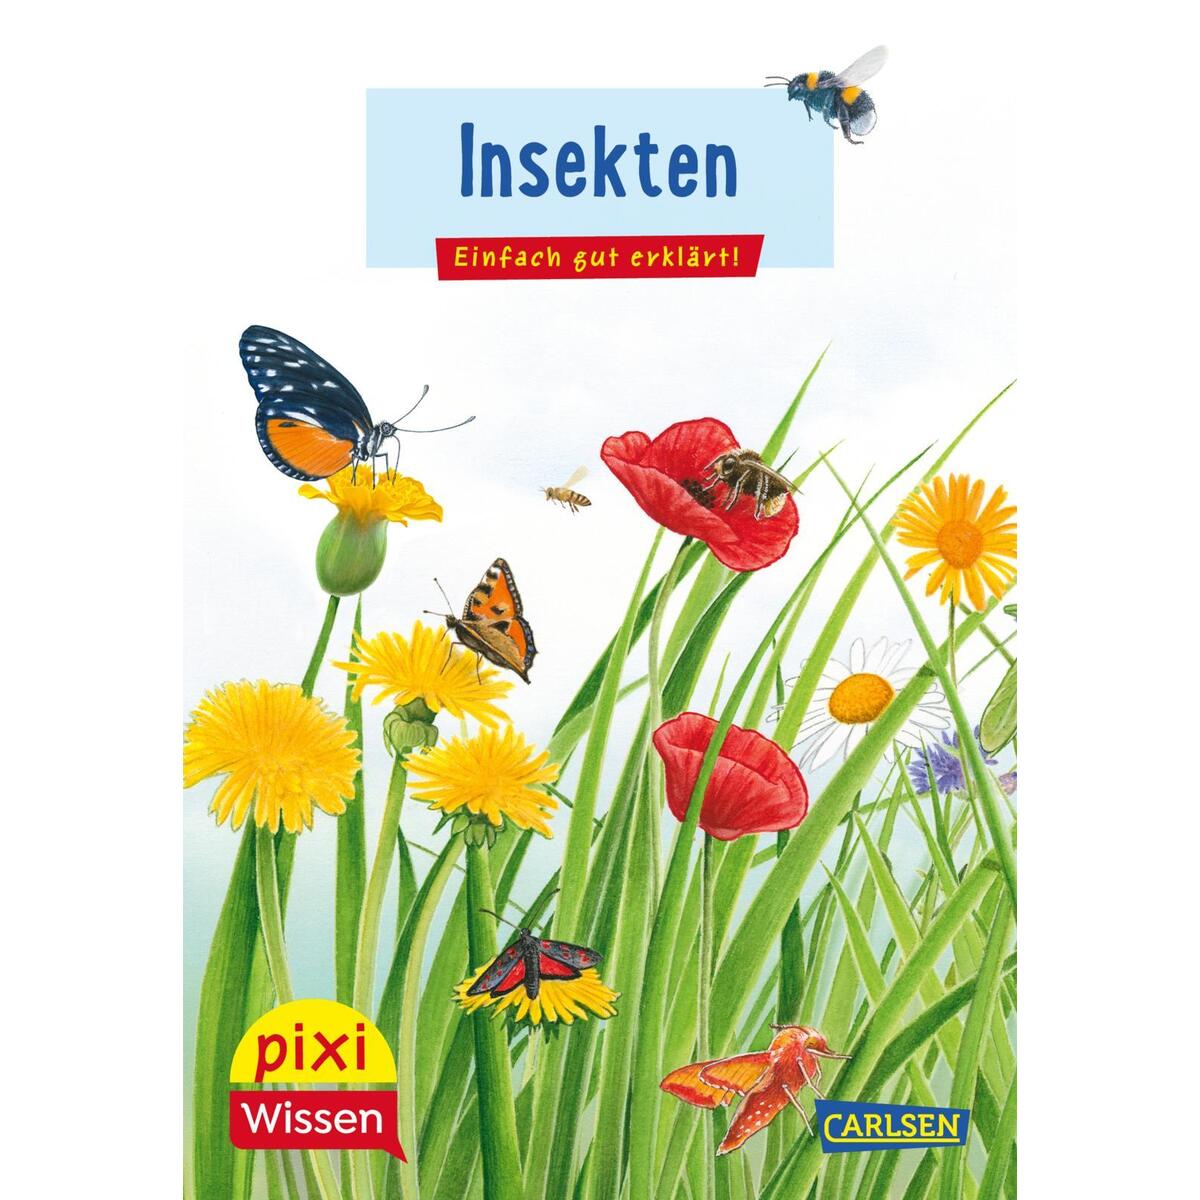 Pixi Wissen 115: VE 5: Insekten von Carlsen Verlag GmbH